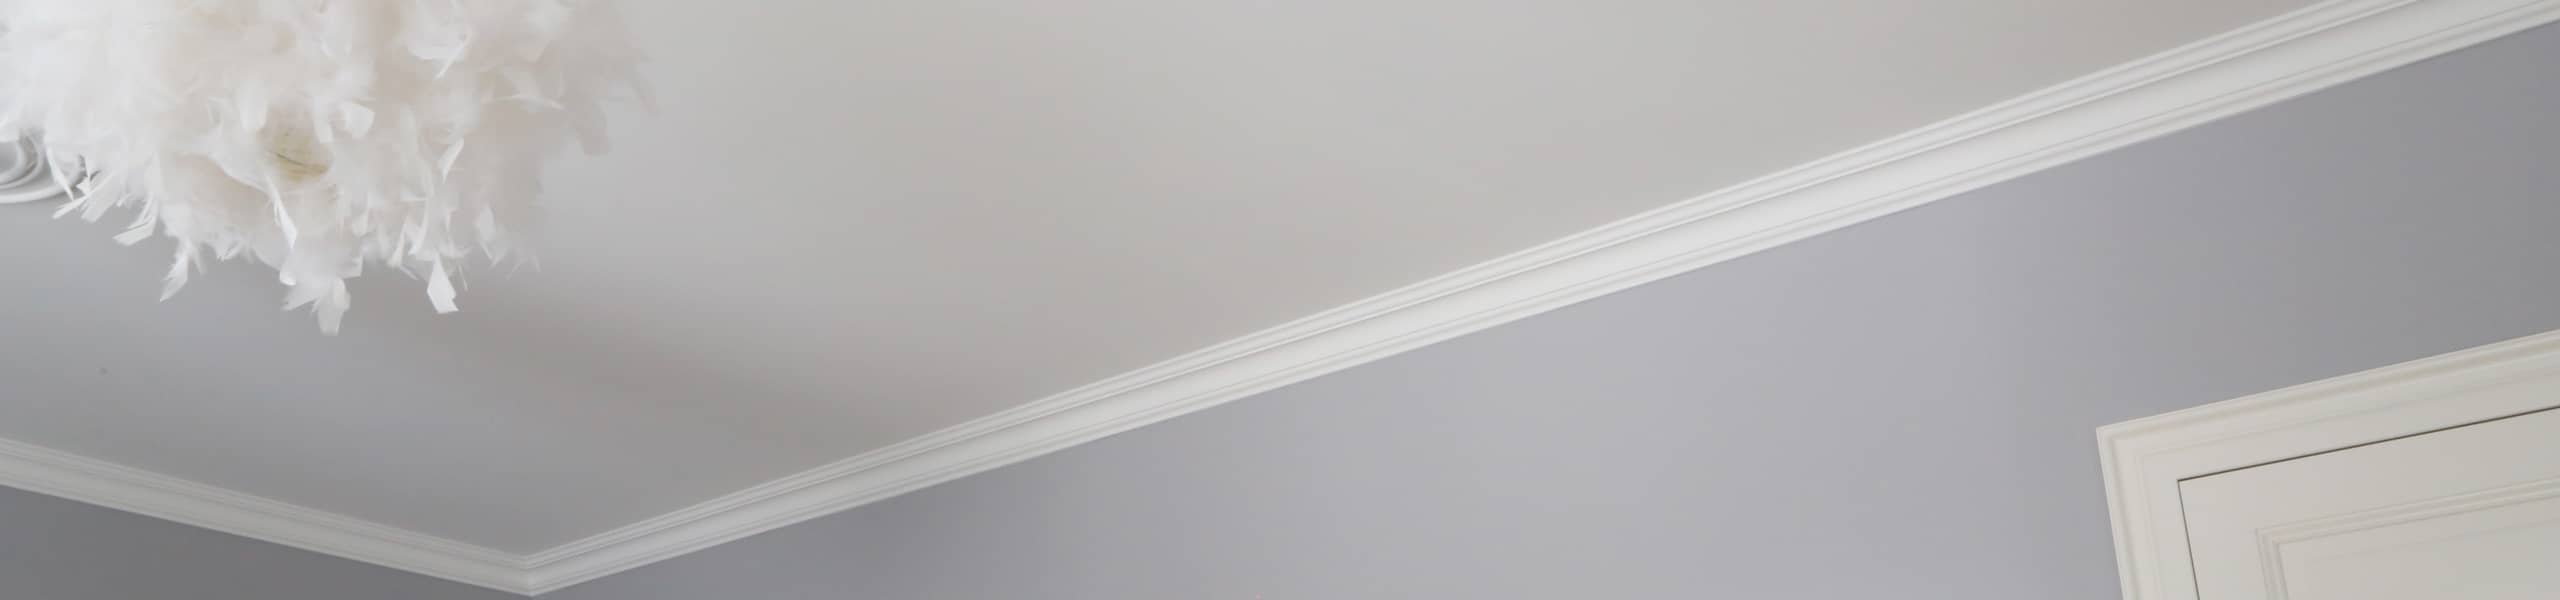 Peinture et finition chambre à coucher teintes pastelles : blanc et violet. Lustre blanc en plumes, miroir et porte intérieure.